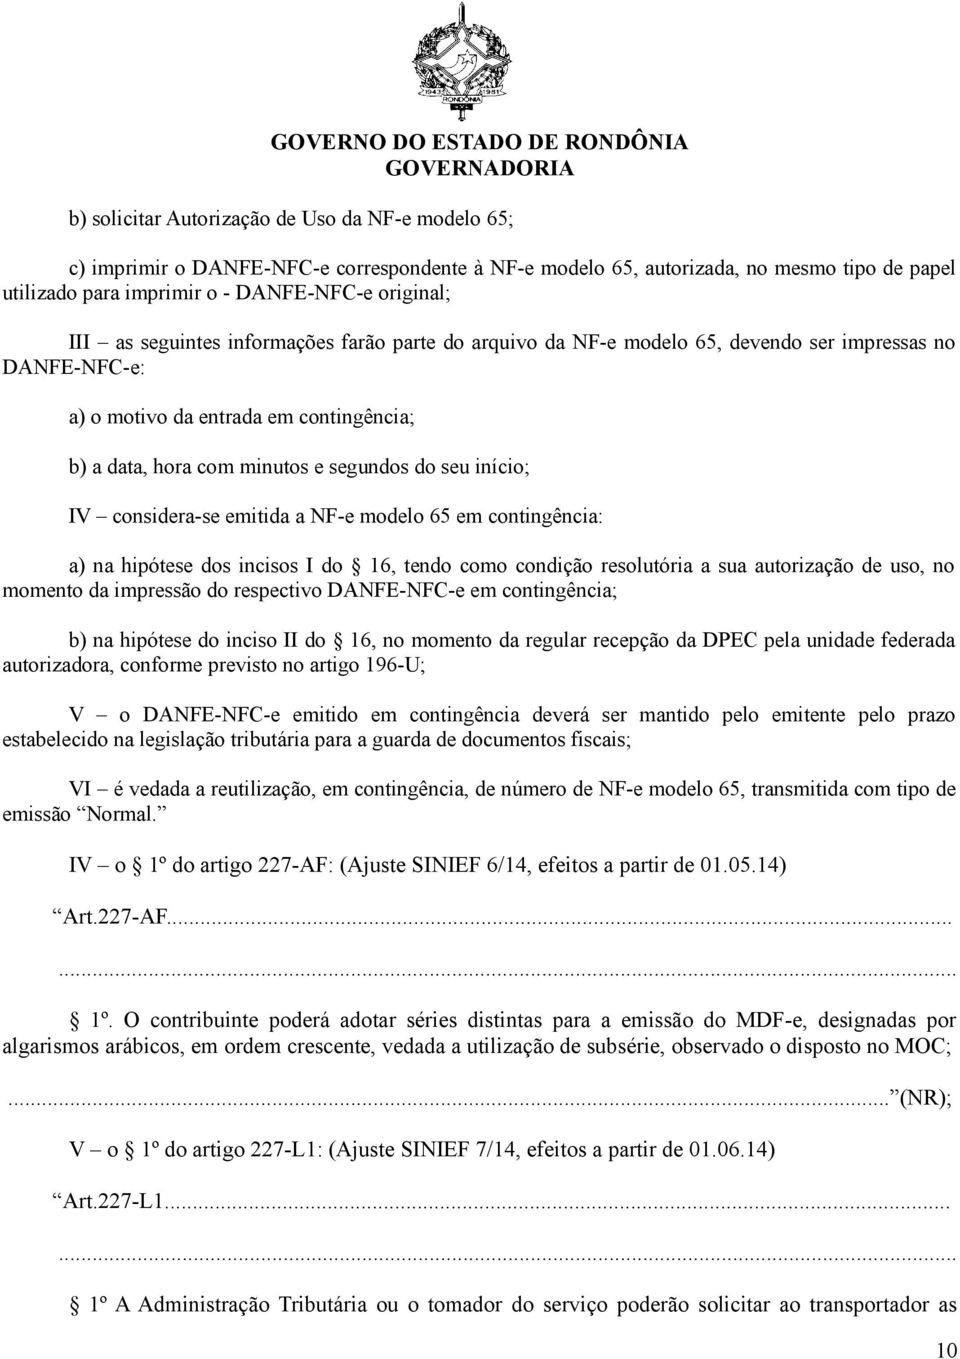 IV considera-se emitida a NF-e modelo 65 em contingência: a) na hipótese dos incisos I do 16, tendo como condição resolutória a sua autorização de uso, no momento da impressão do respectivo